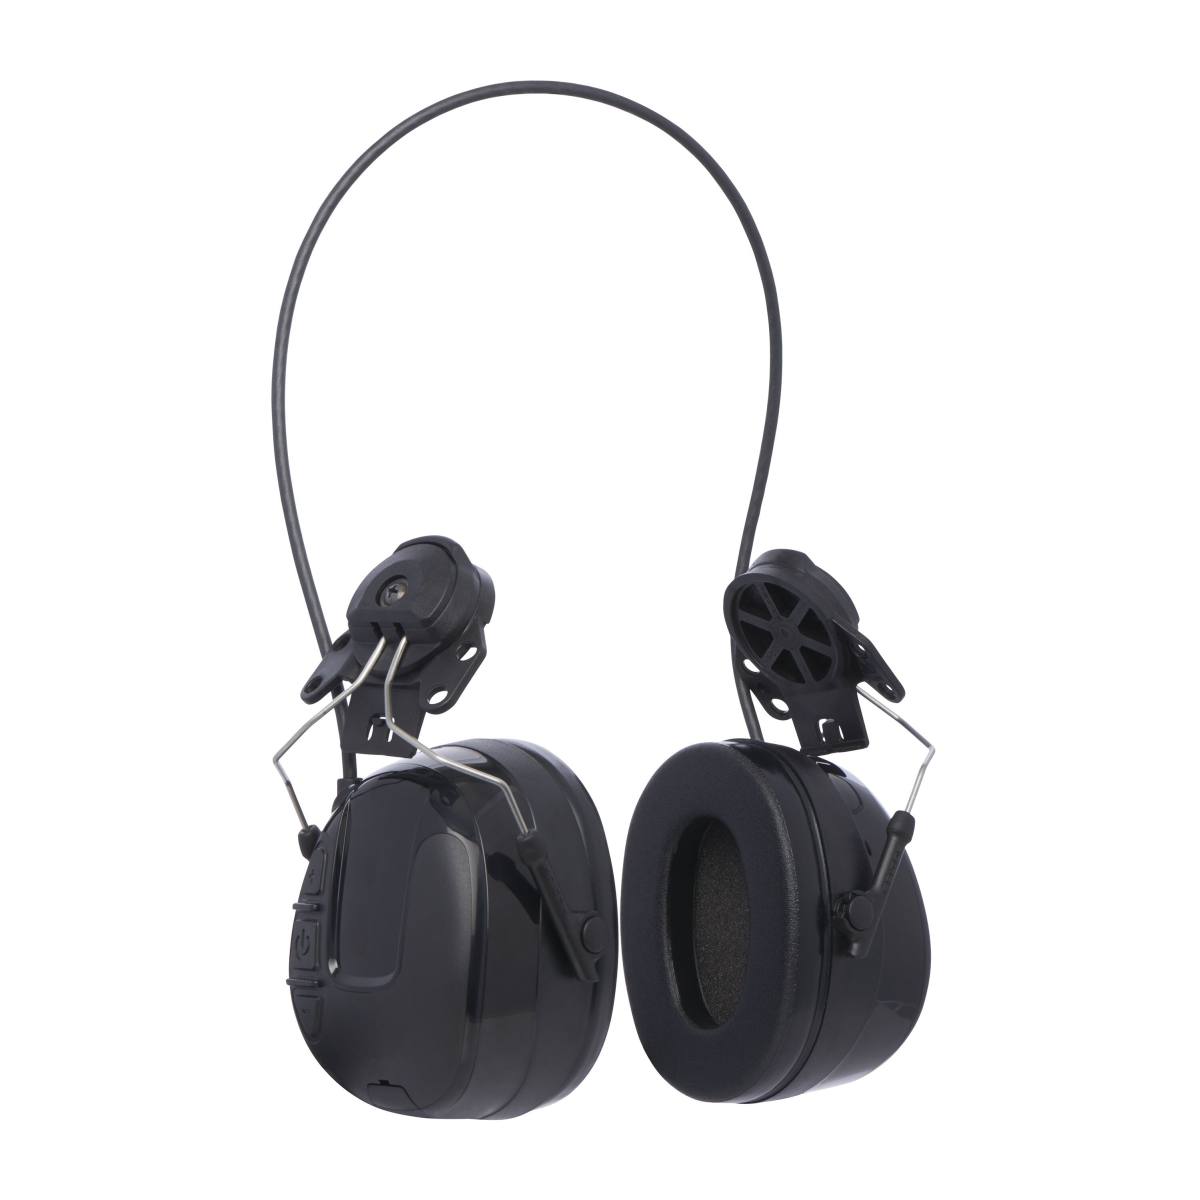 3M Peltor WorkTunes Pro Auriculares de protección auditiva con radio FM, fijación para casco, negro